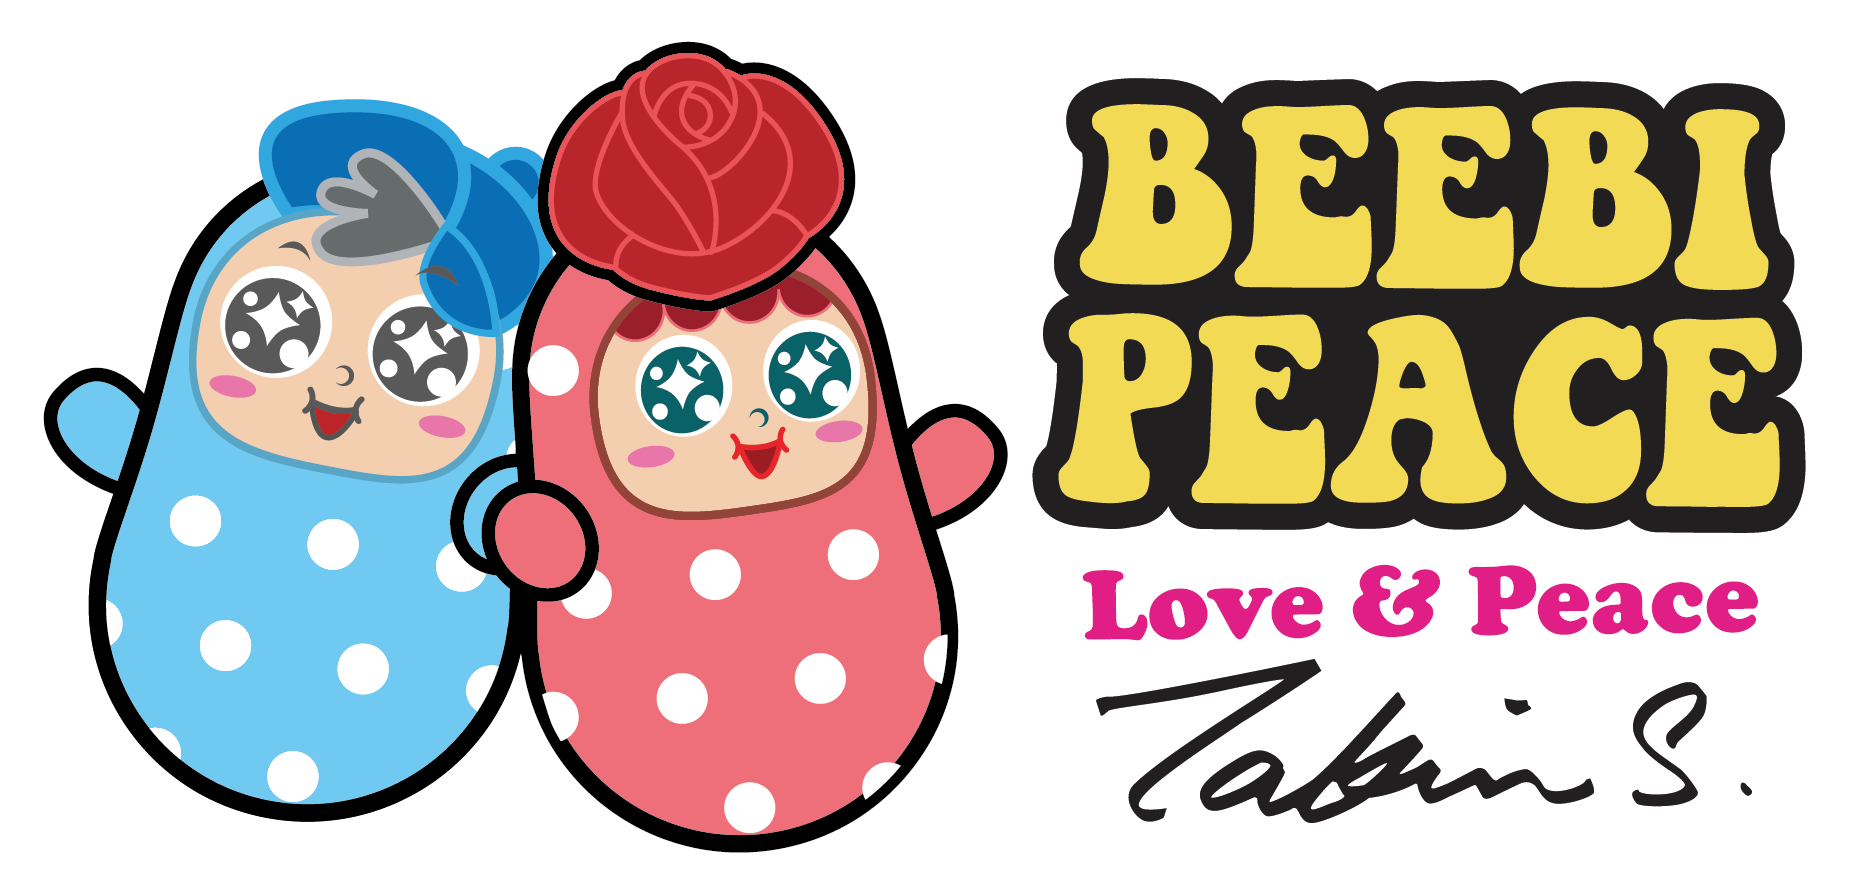 Beebi Peace logo.png